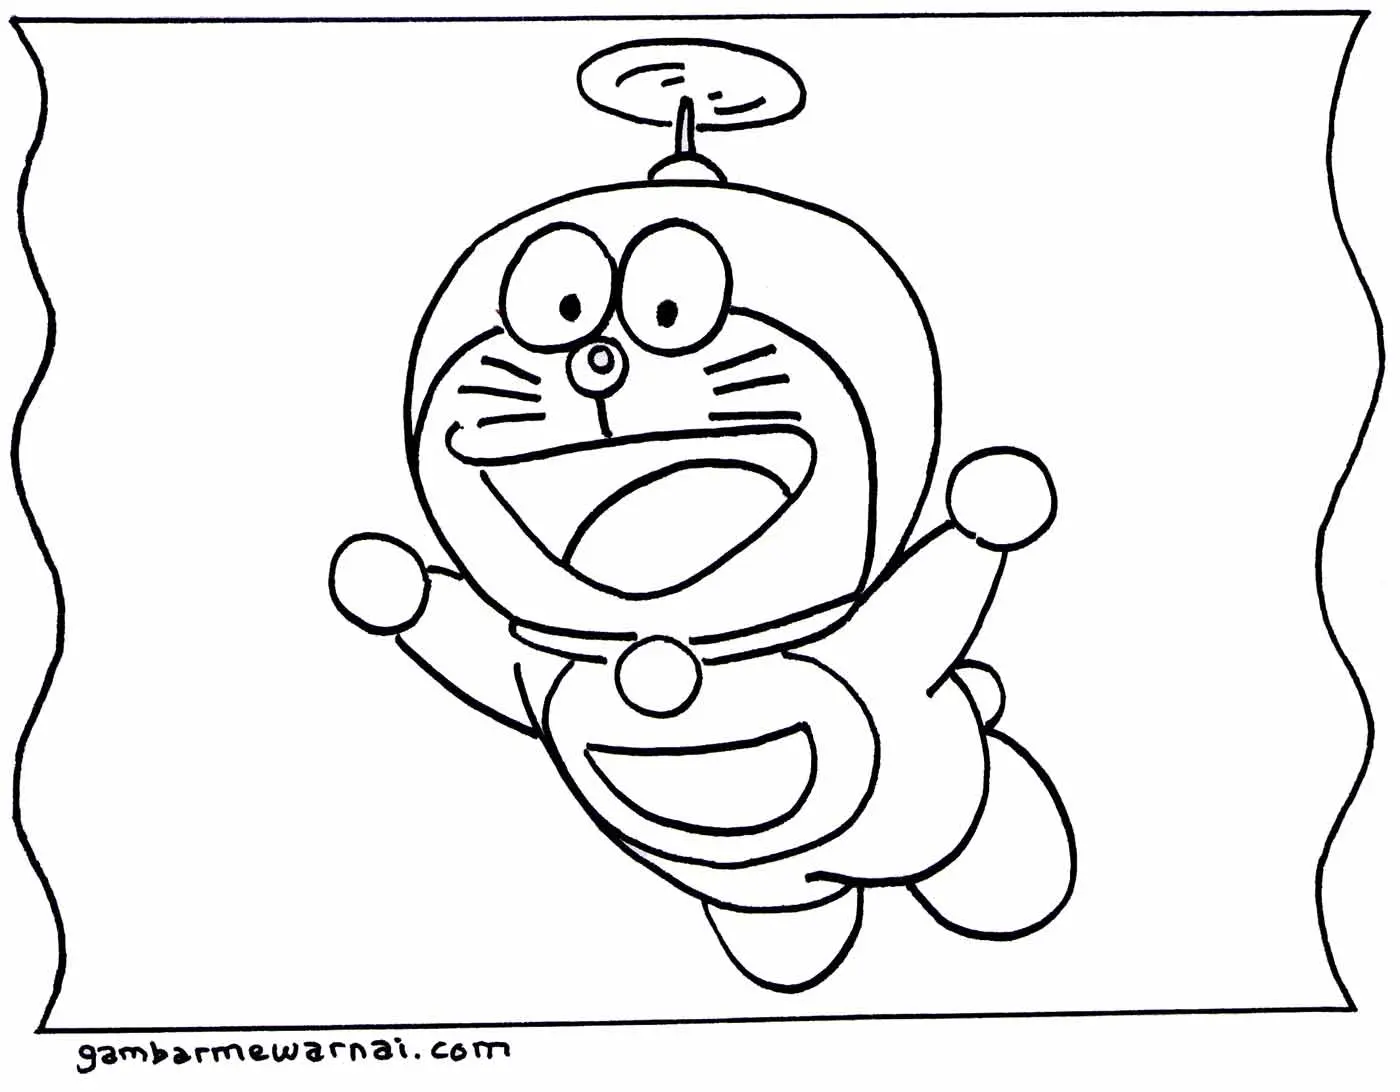 Cara Mudah Mewarnai Gambar Doraemon Hitam Putih untuk Anak-Anak